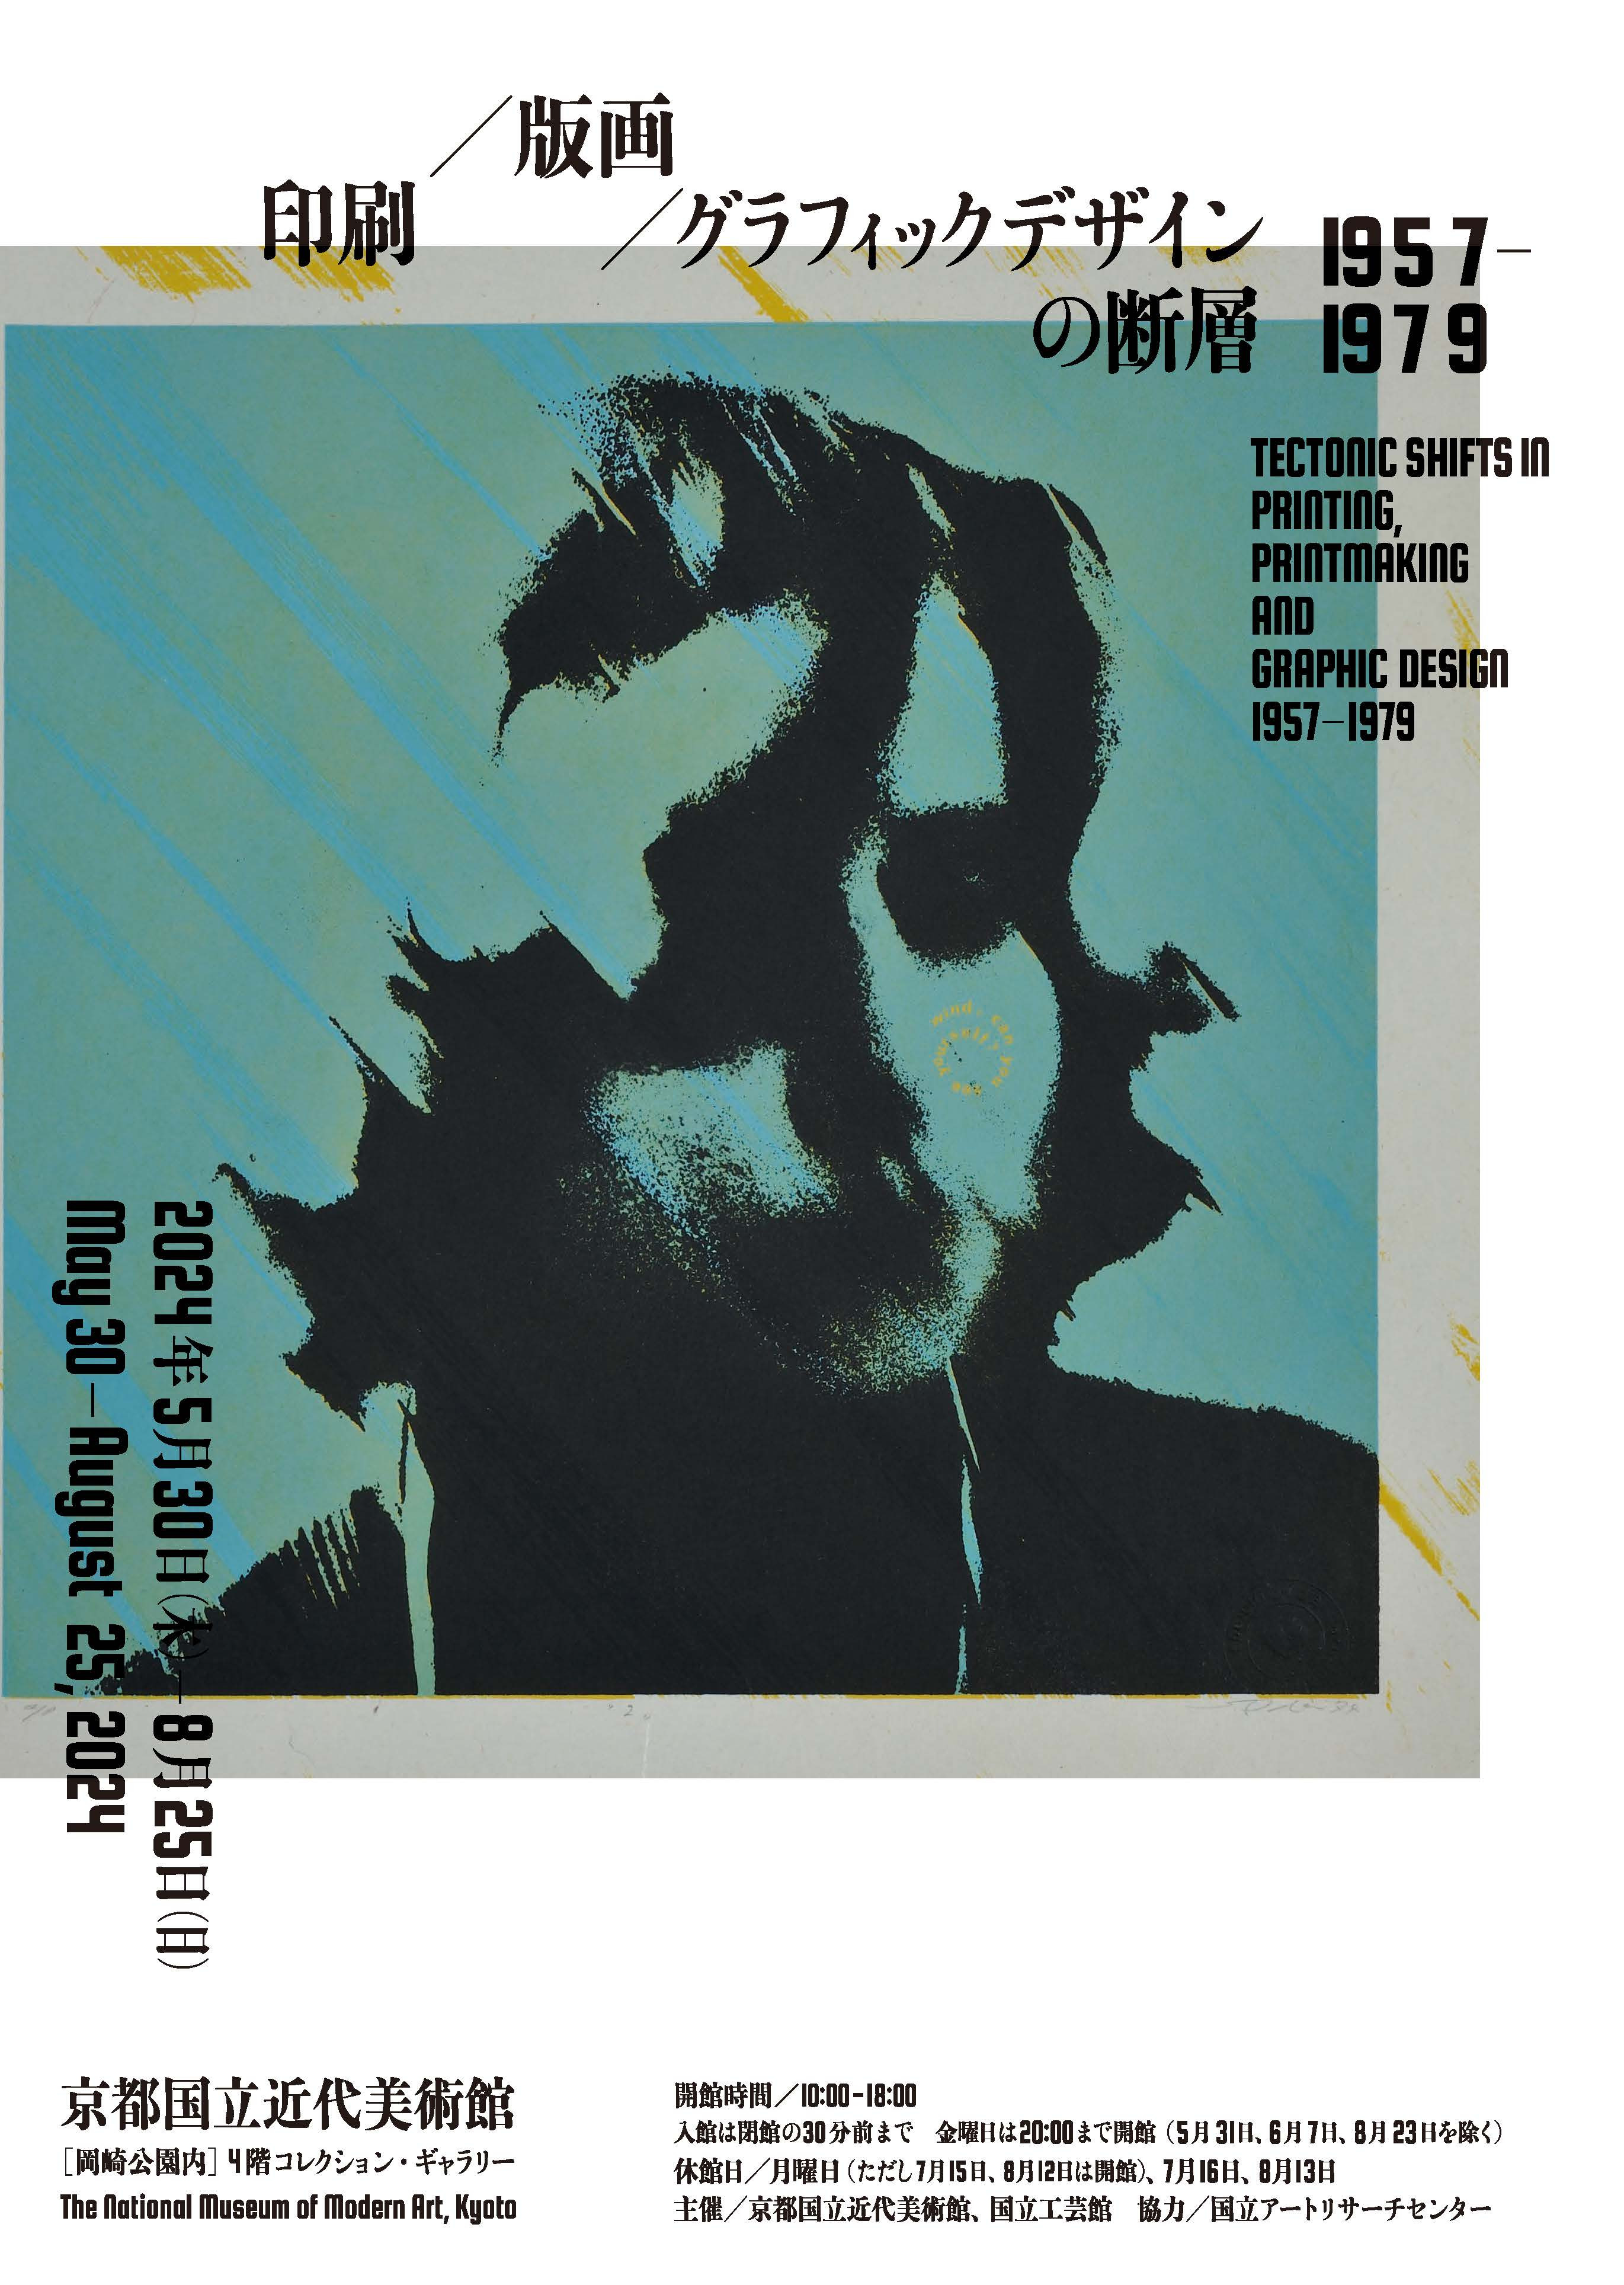 印刷／版画／グラフィックデザインの断層 1957–1979 | 展覧会 | アイエム［インターネットミュージアム］